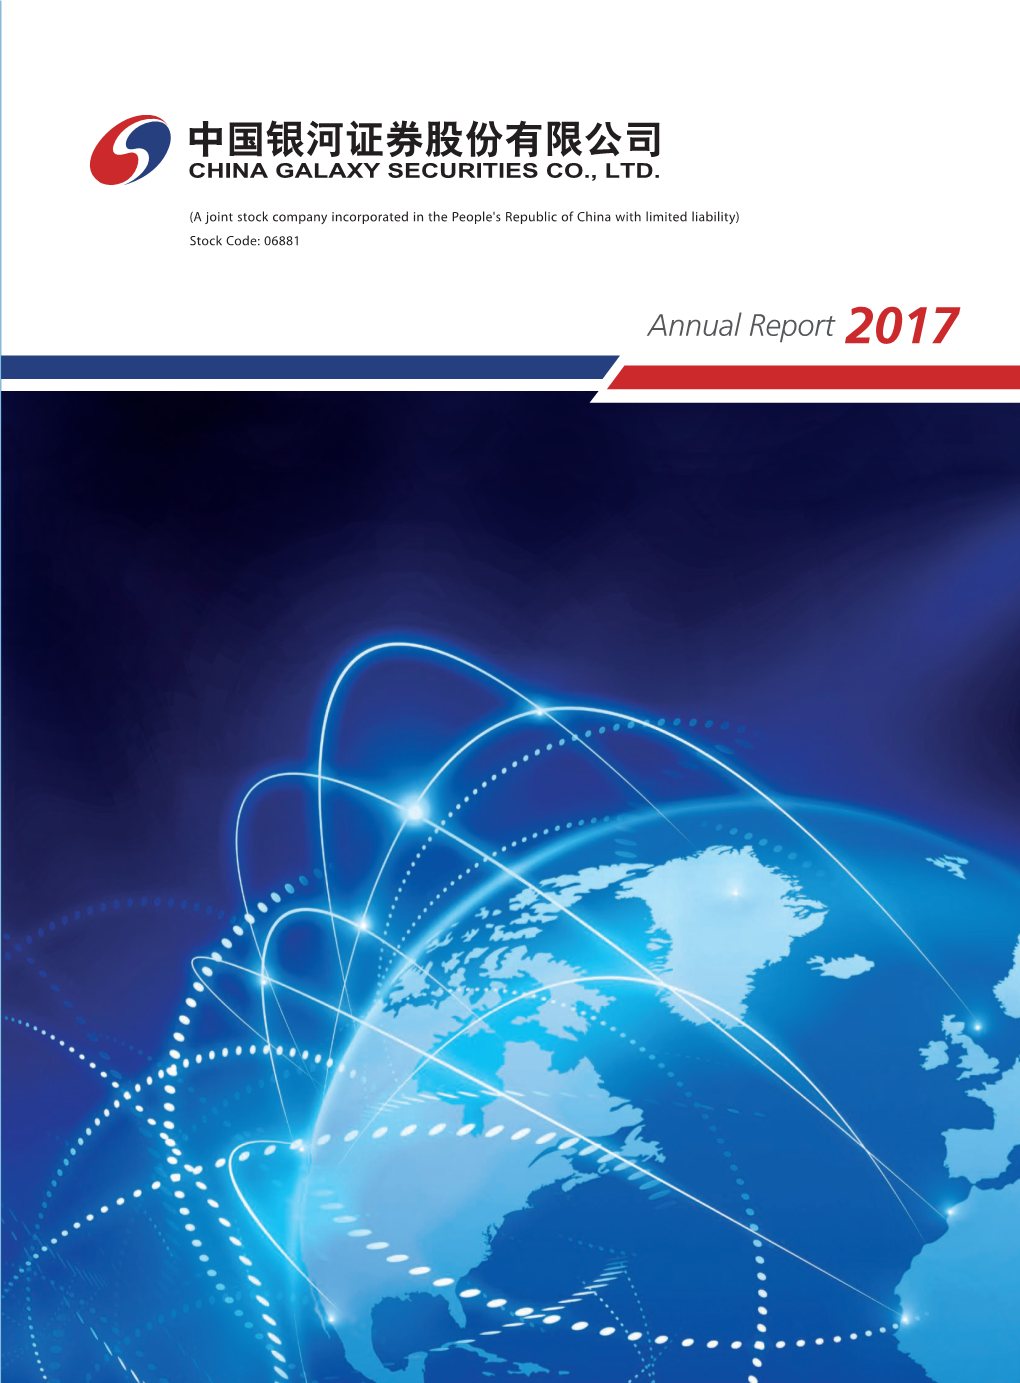 Annual Report 2017 Annual Report